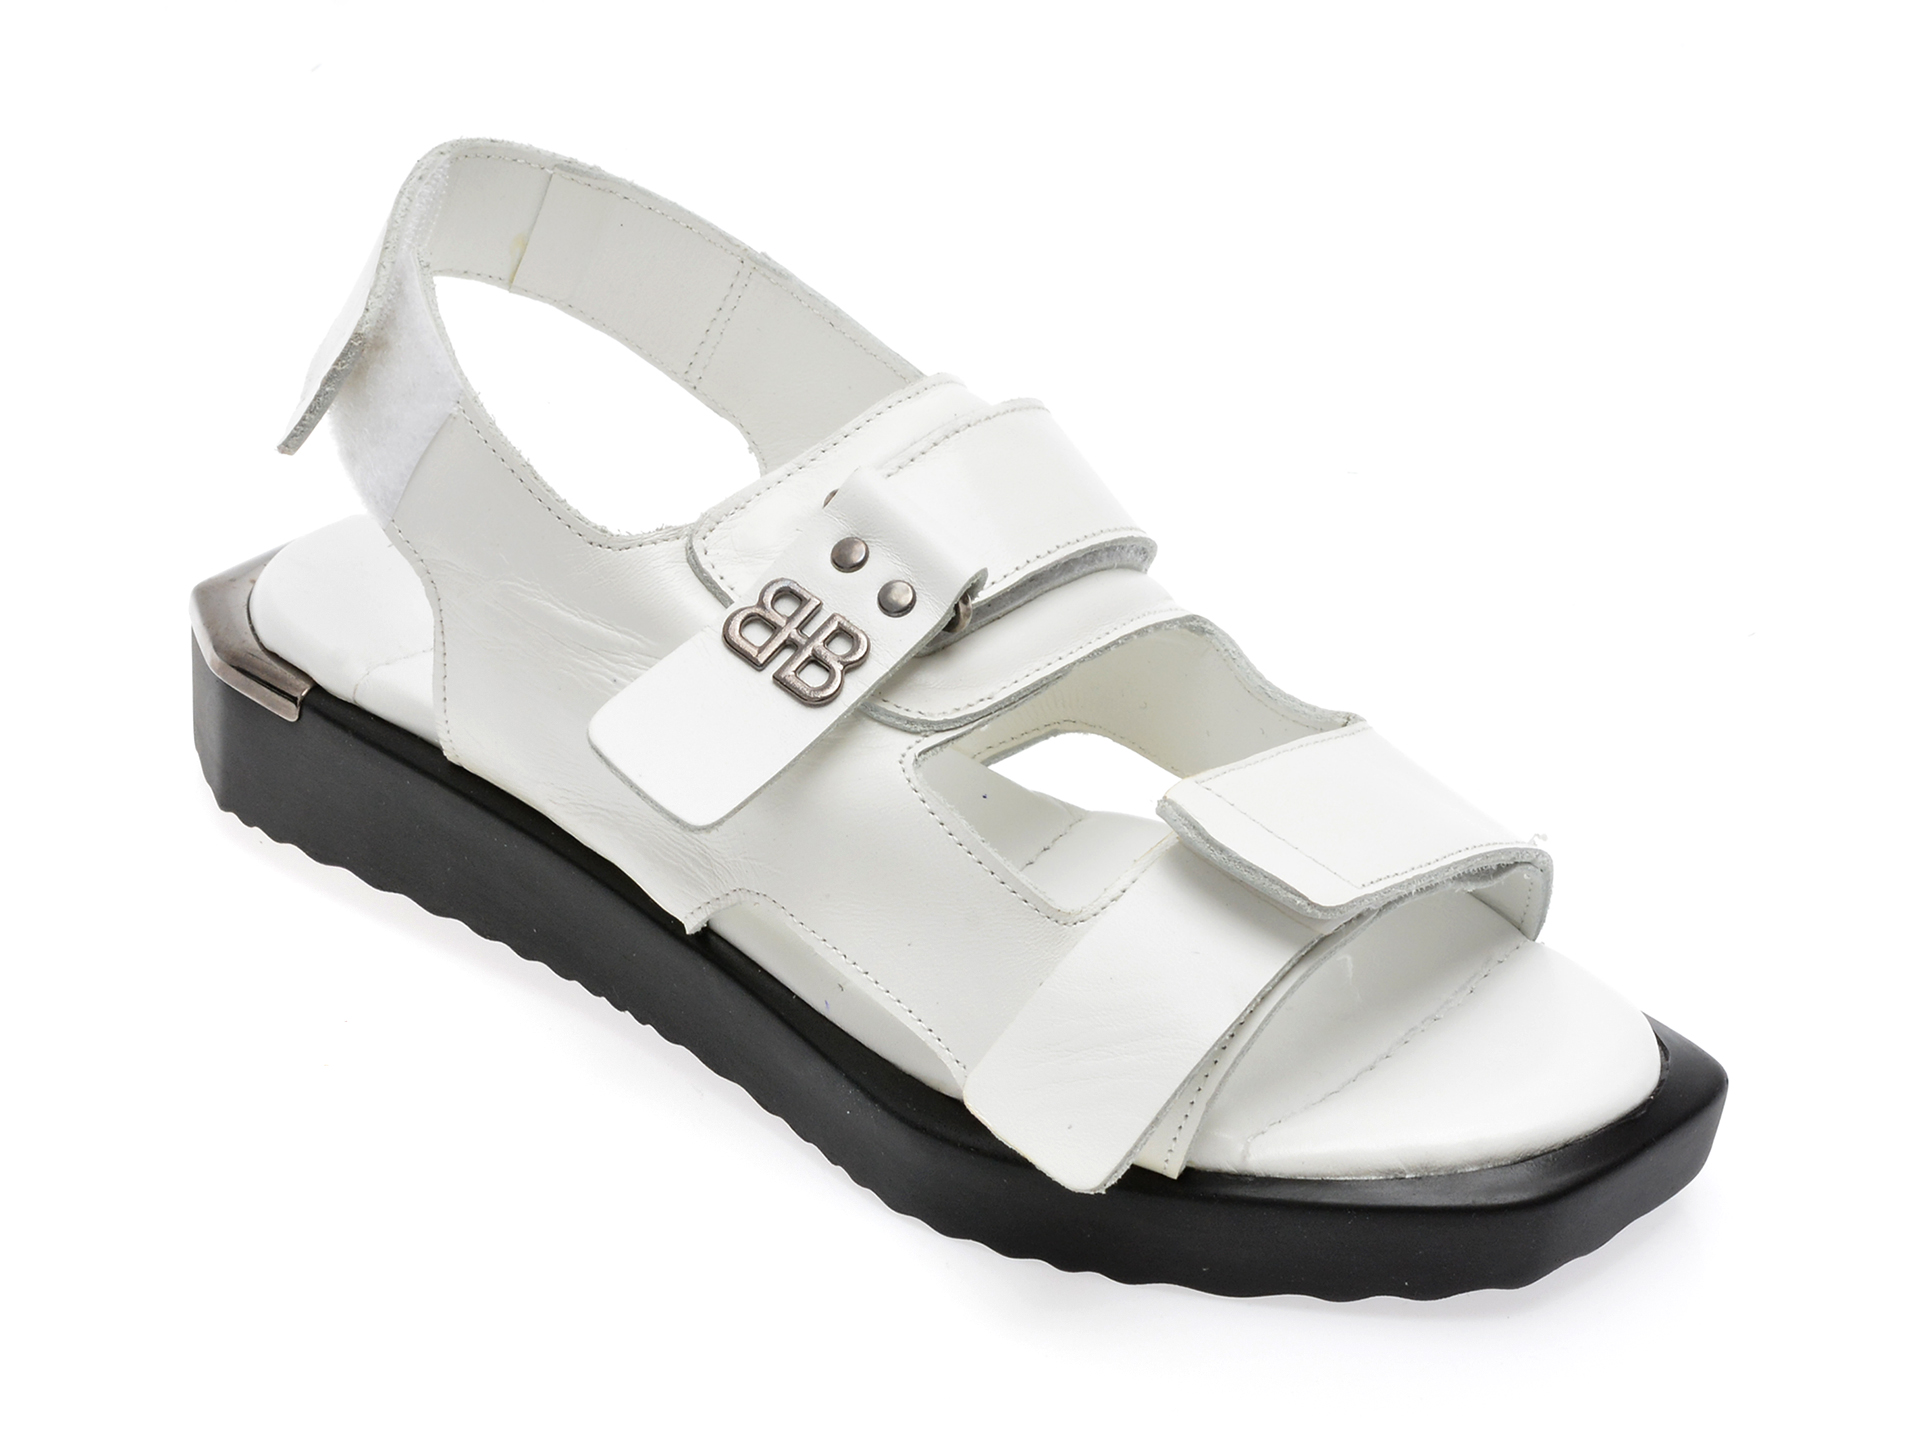 Sandale EMANI albe, 341, din piele naturala /femei/sandale imagine noua